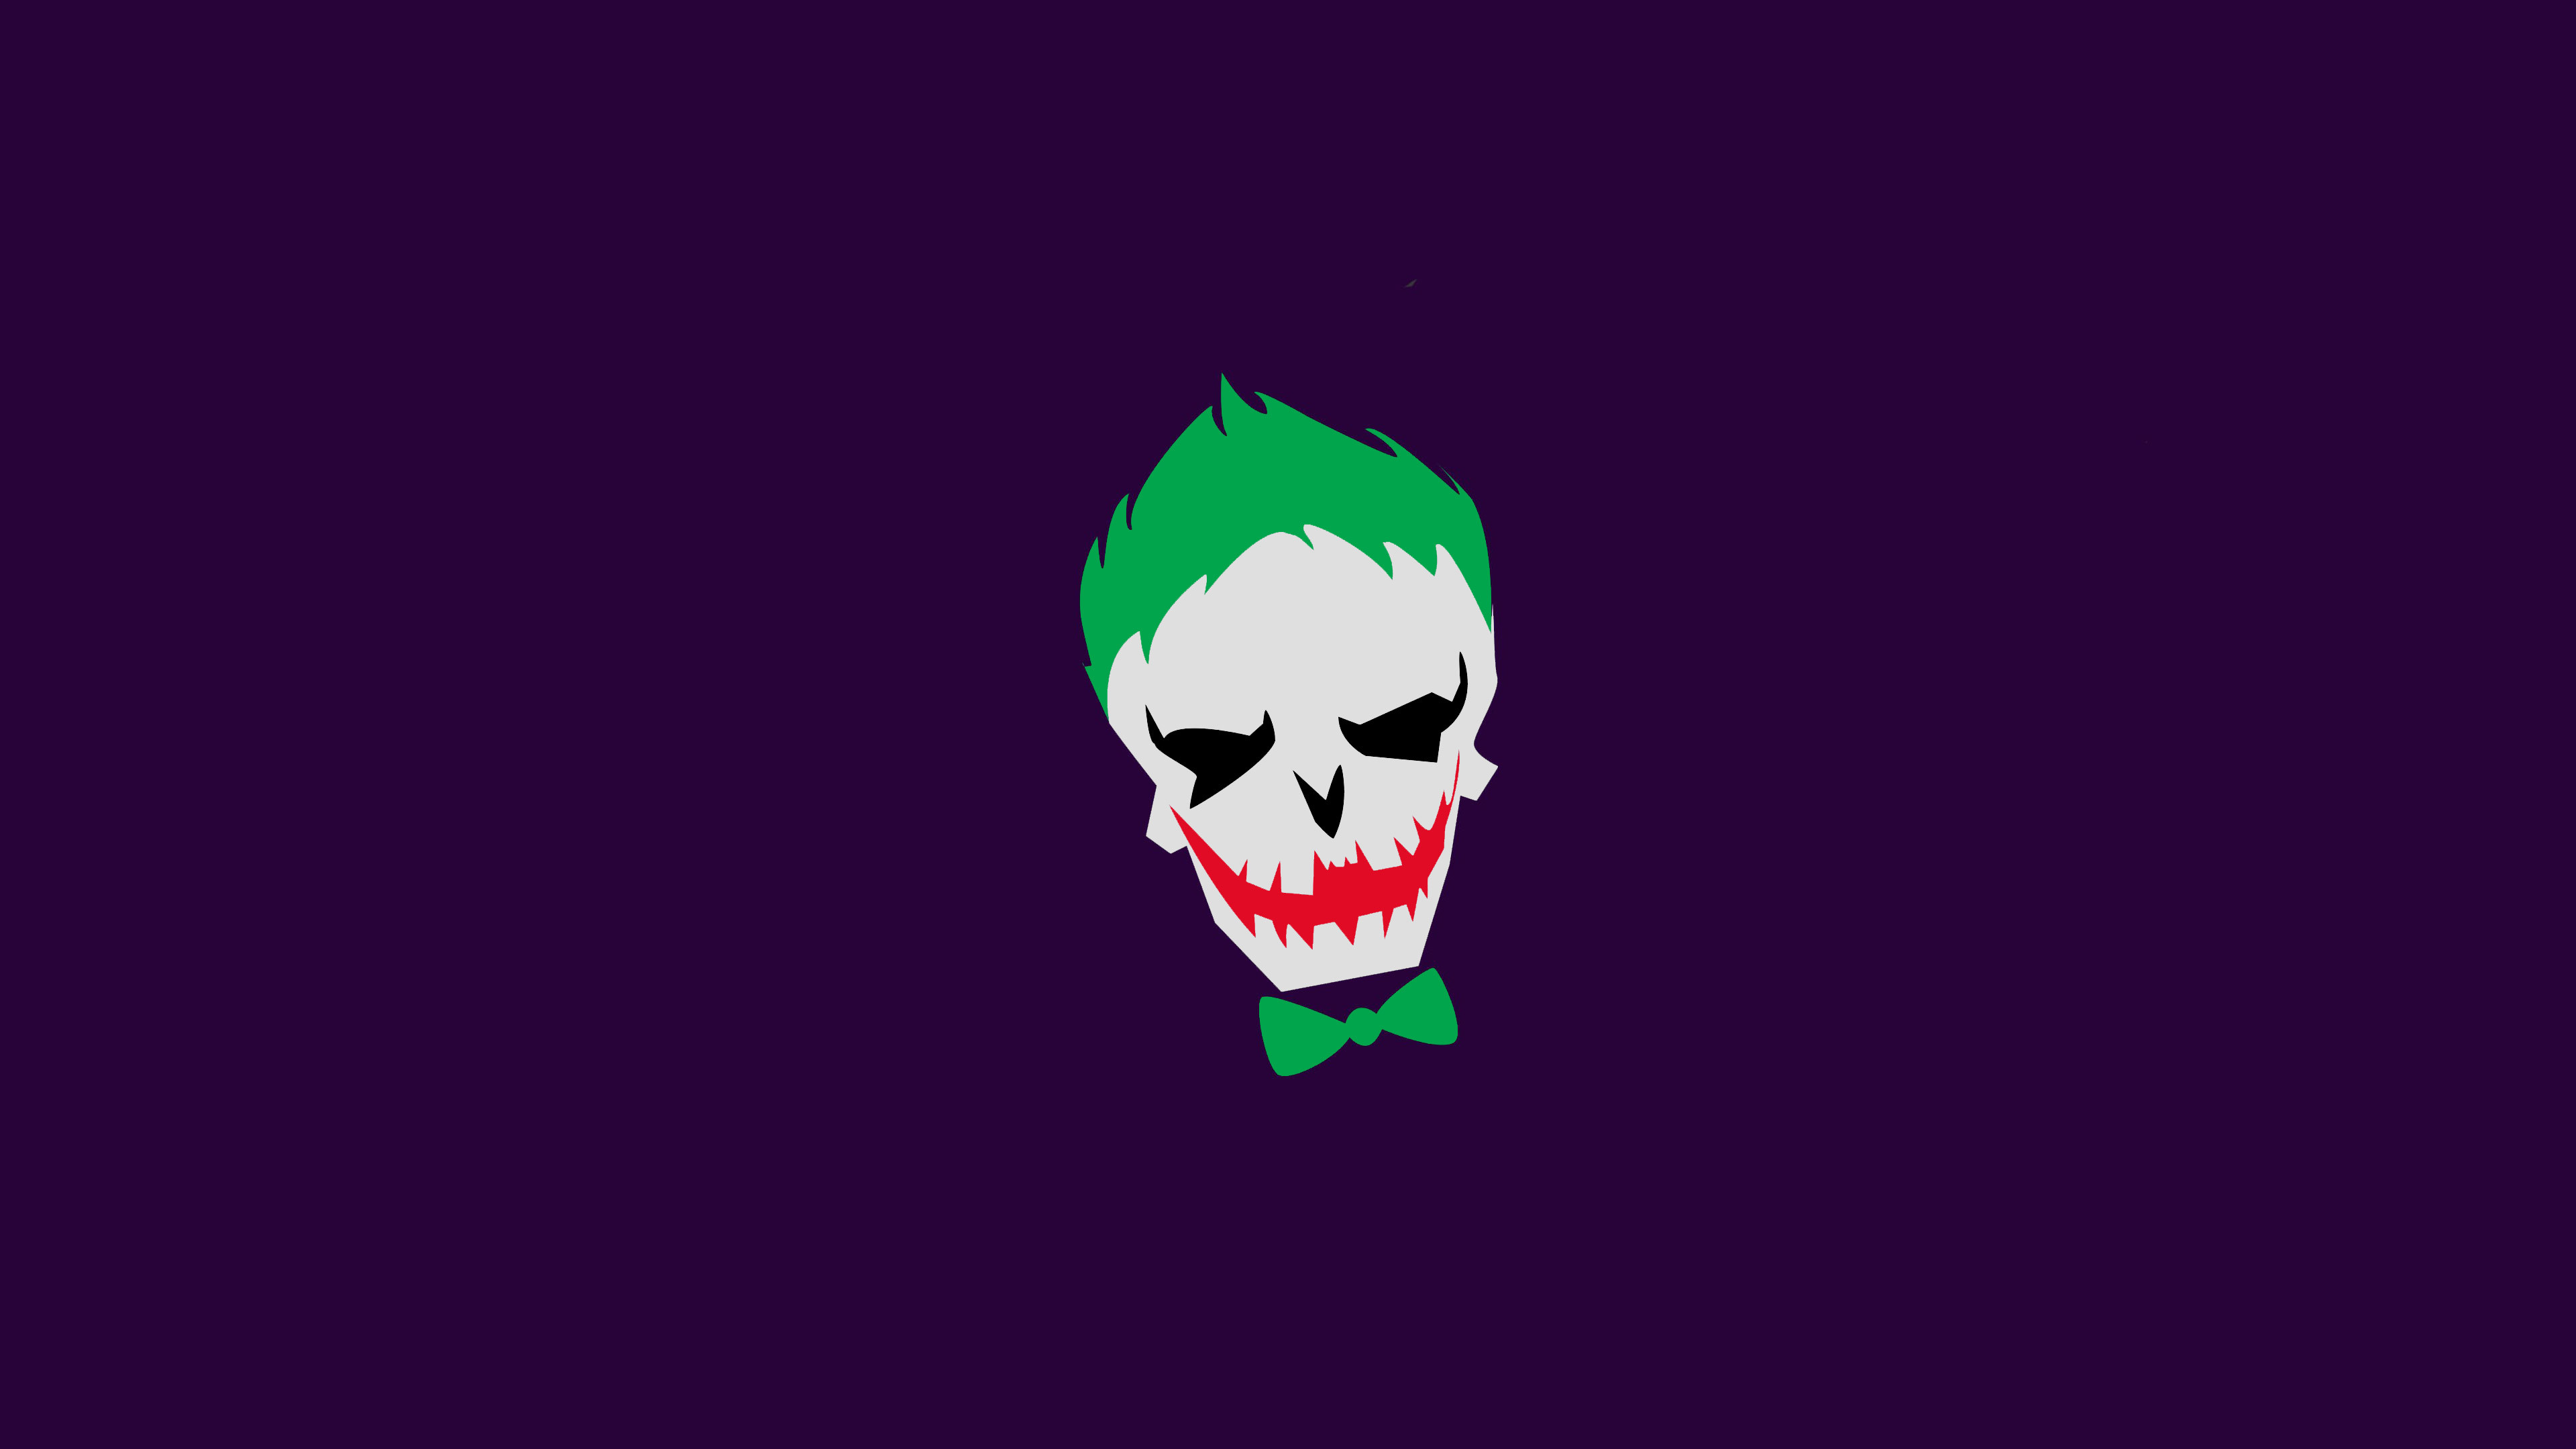 3840x2160 joker-minimalism-4k-ap.jpg (3840Ã2160) | dc character logos | Pinterest |  Dc characters and Joker